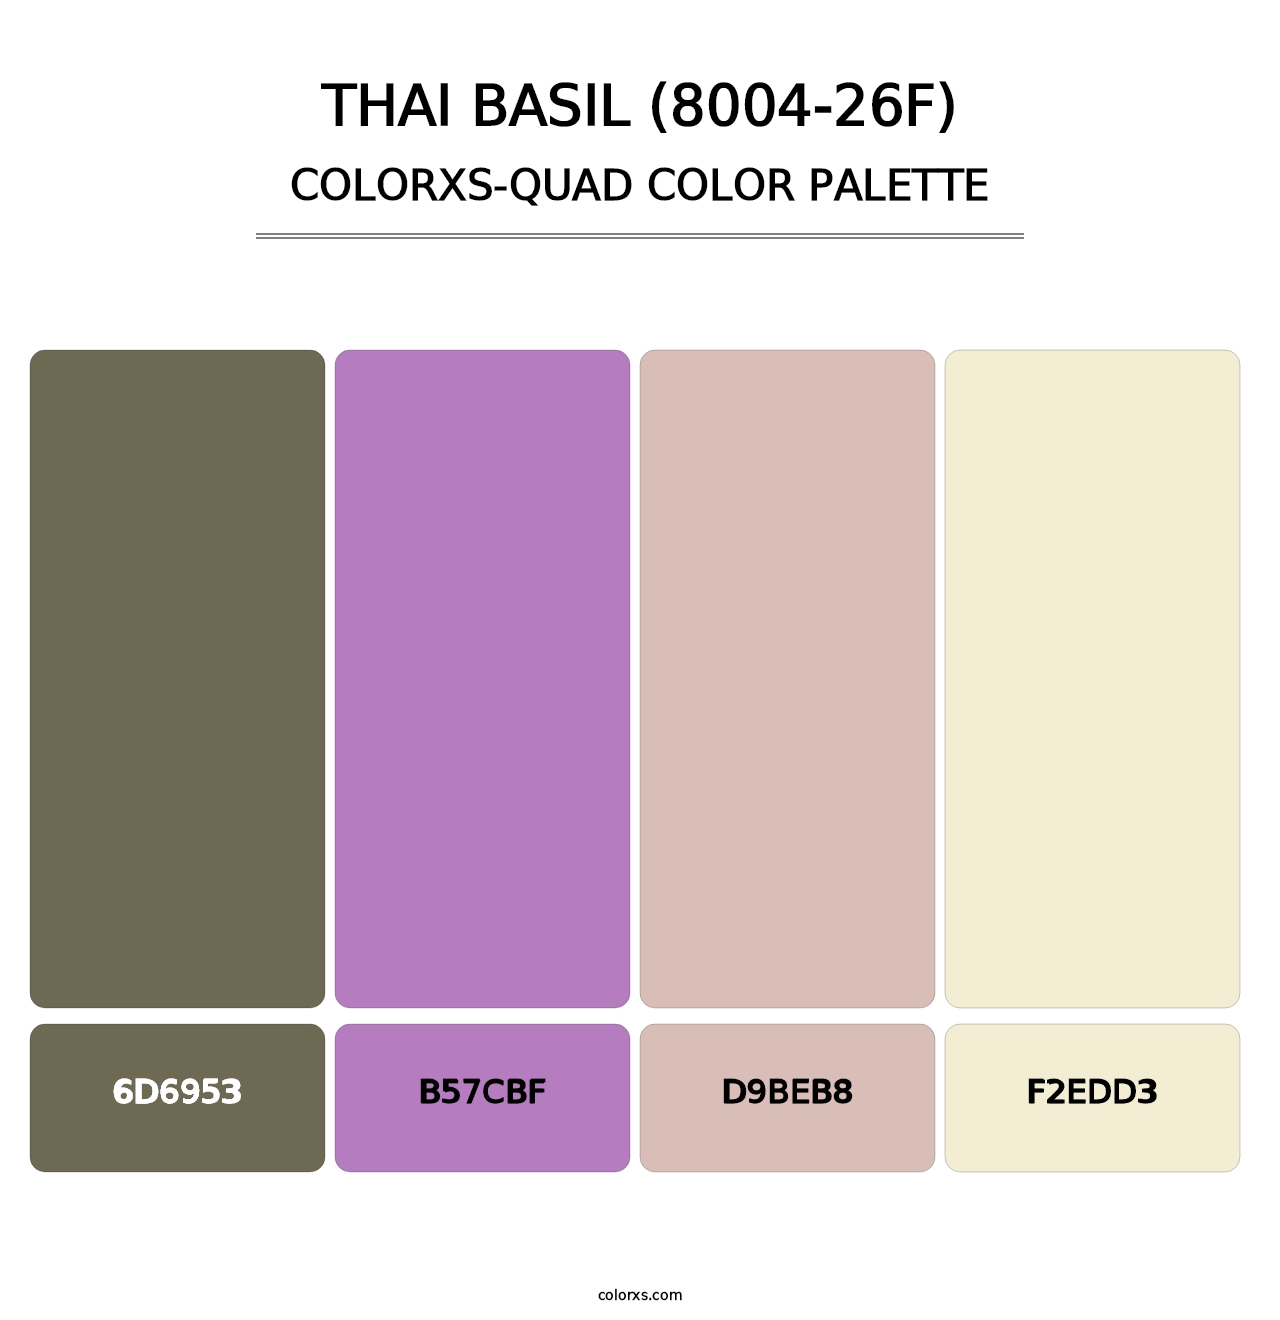 Thai Basil (8004-26F) - Colorxs Quad Palette